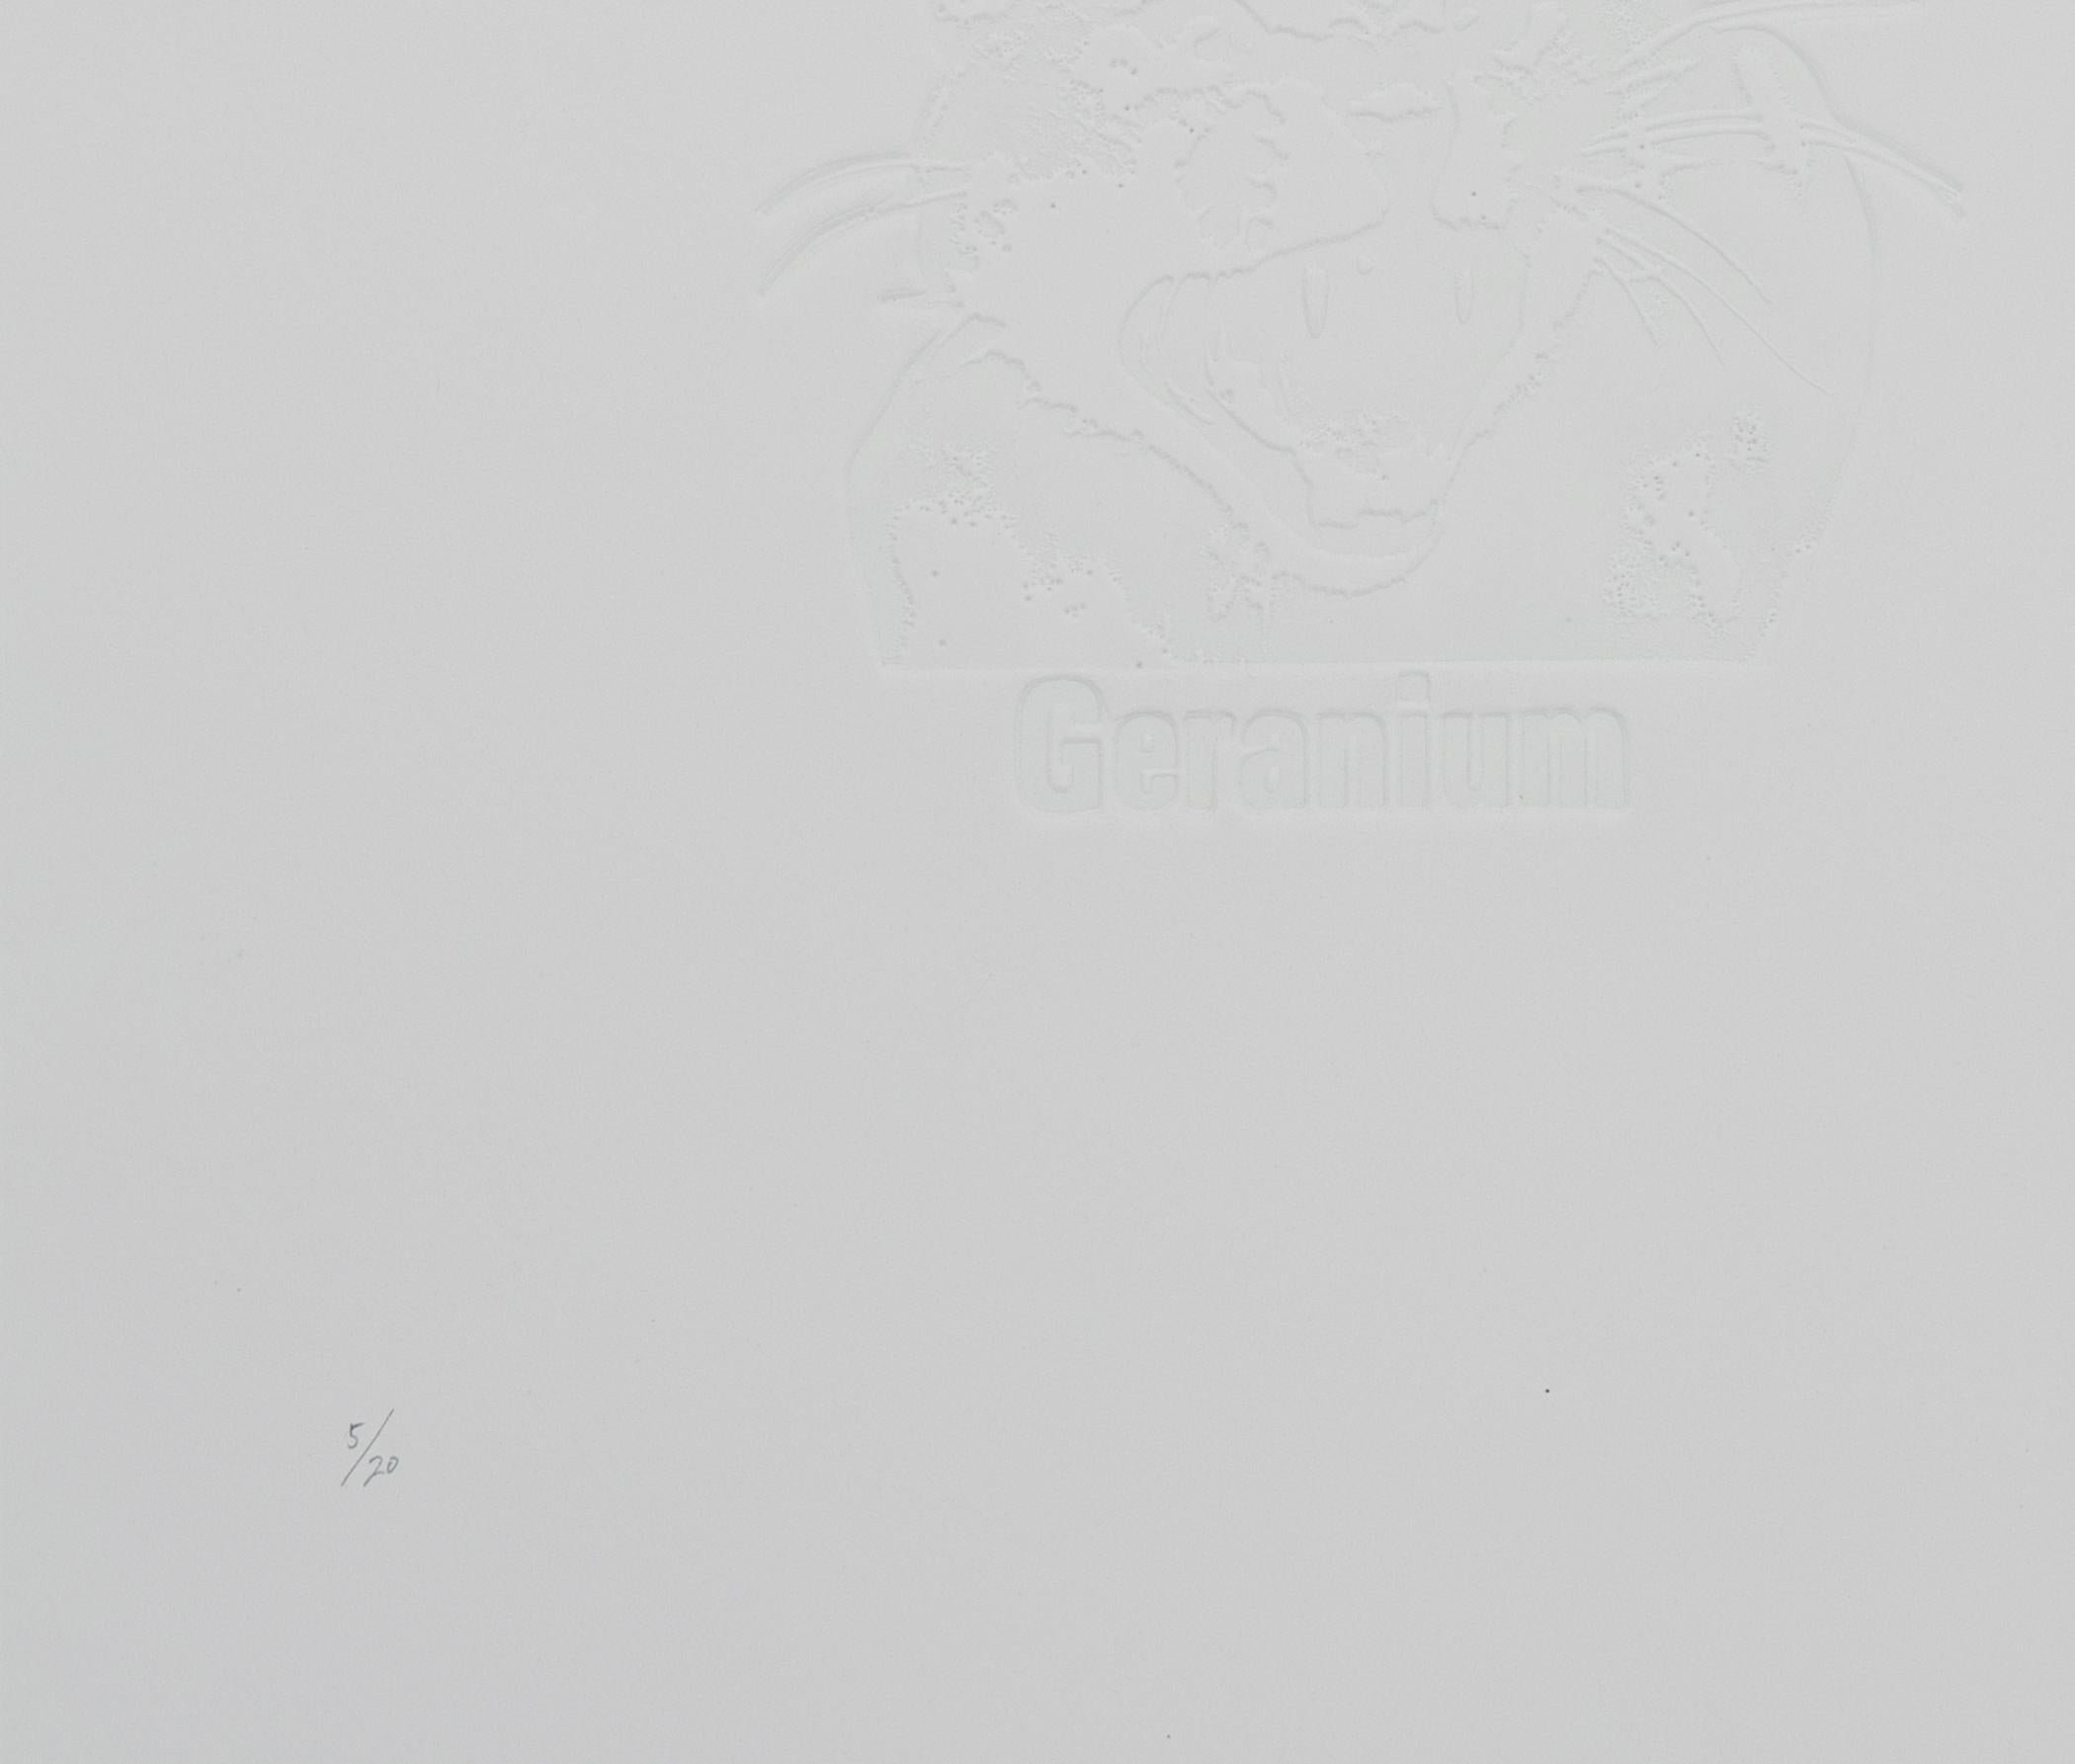 Géranium
Par Yutaka Takayanagi.
Support - Impression en relief et lithographie
Edition - 5/20
Signé - Oui
Taille - 510mm x 660mm
Date - 1978
Condition - Excellente. 10 sur 10.

Né à Tokyo en 1941, le parcours artistique de Takayanagi commence